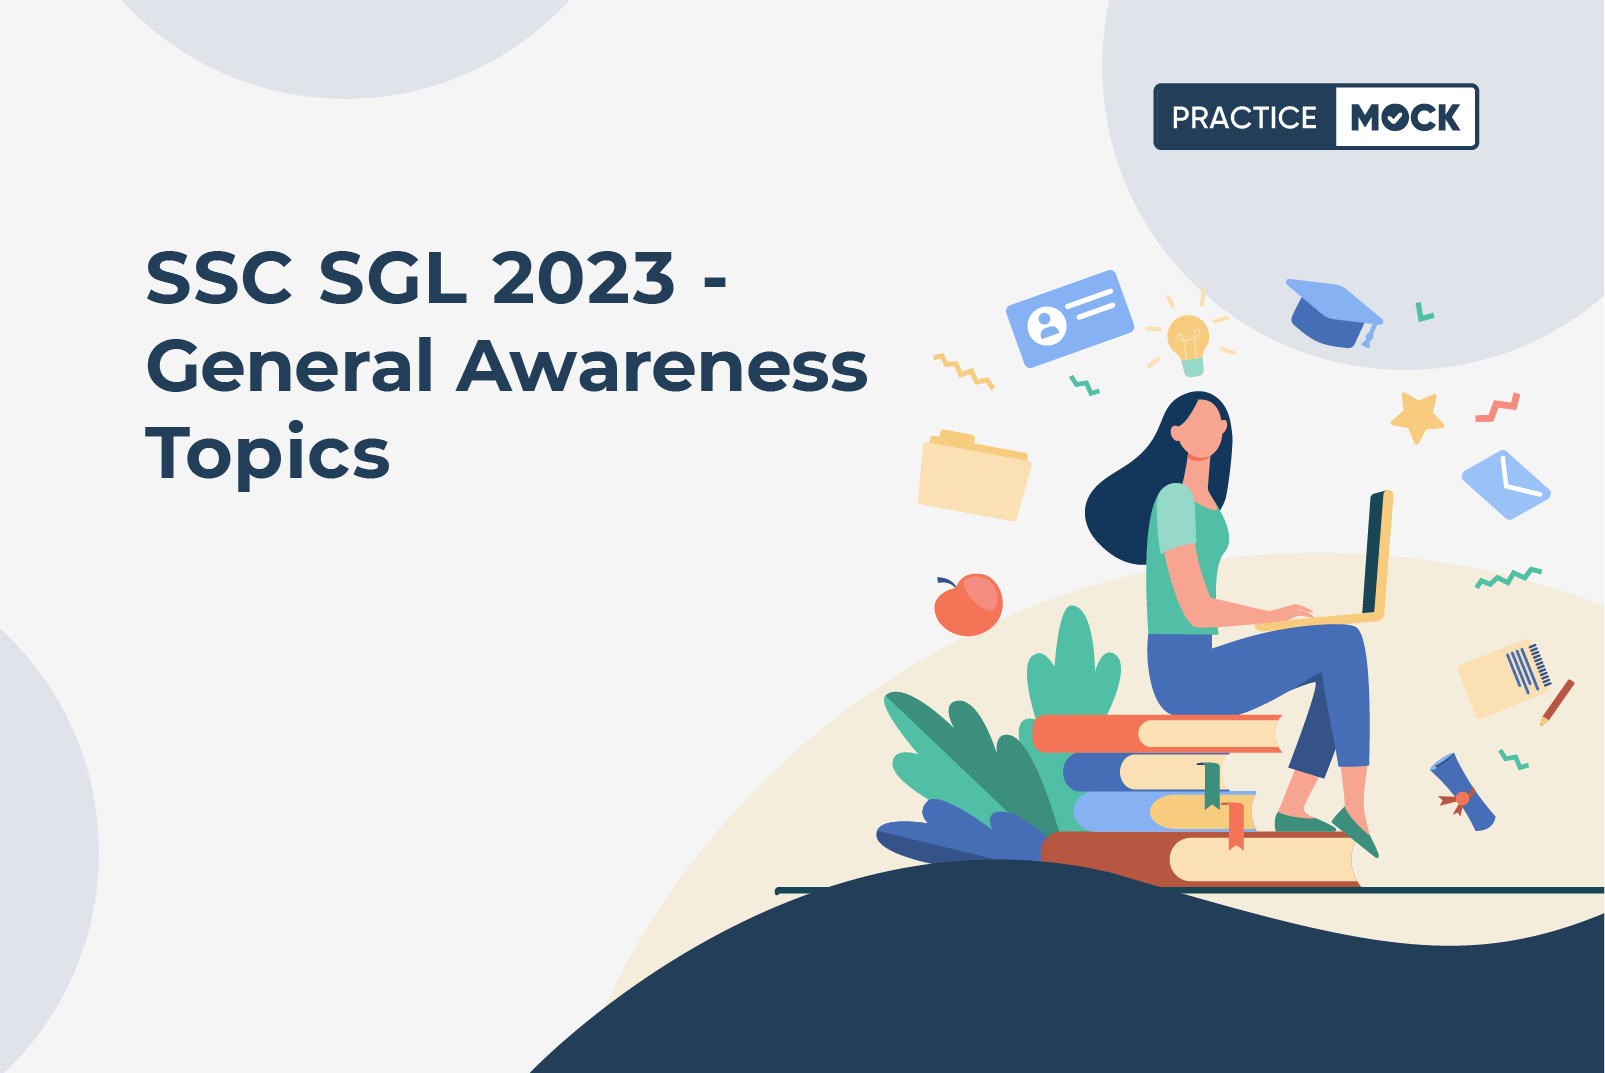 SSC SGL 2023 - General Awareness Topics